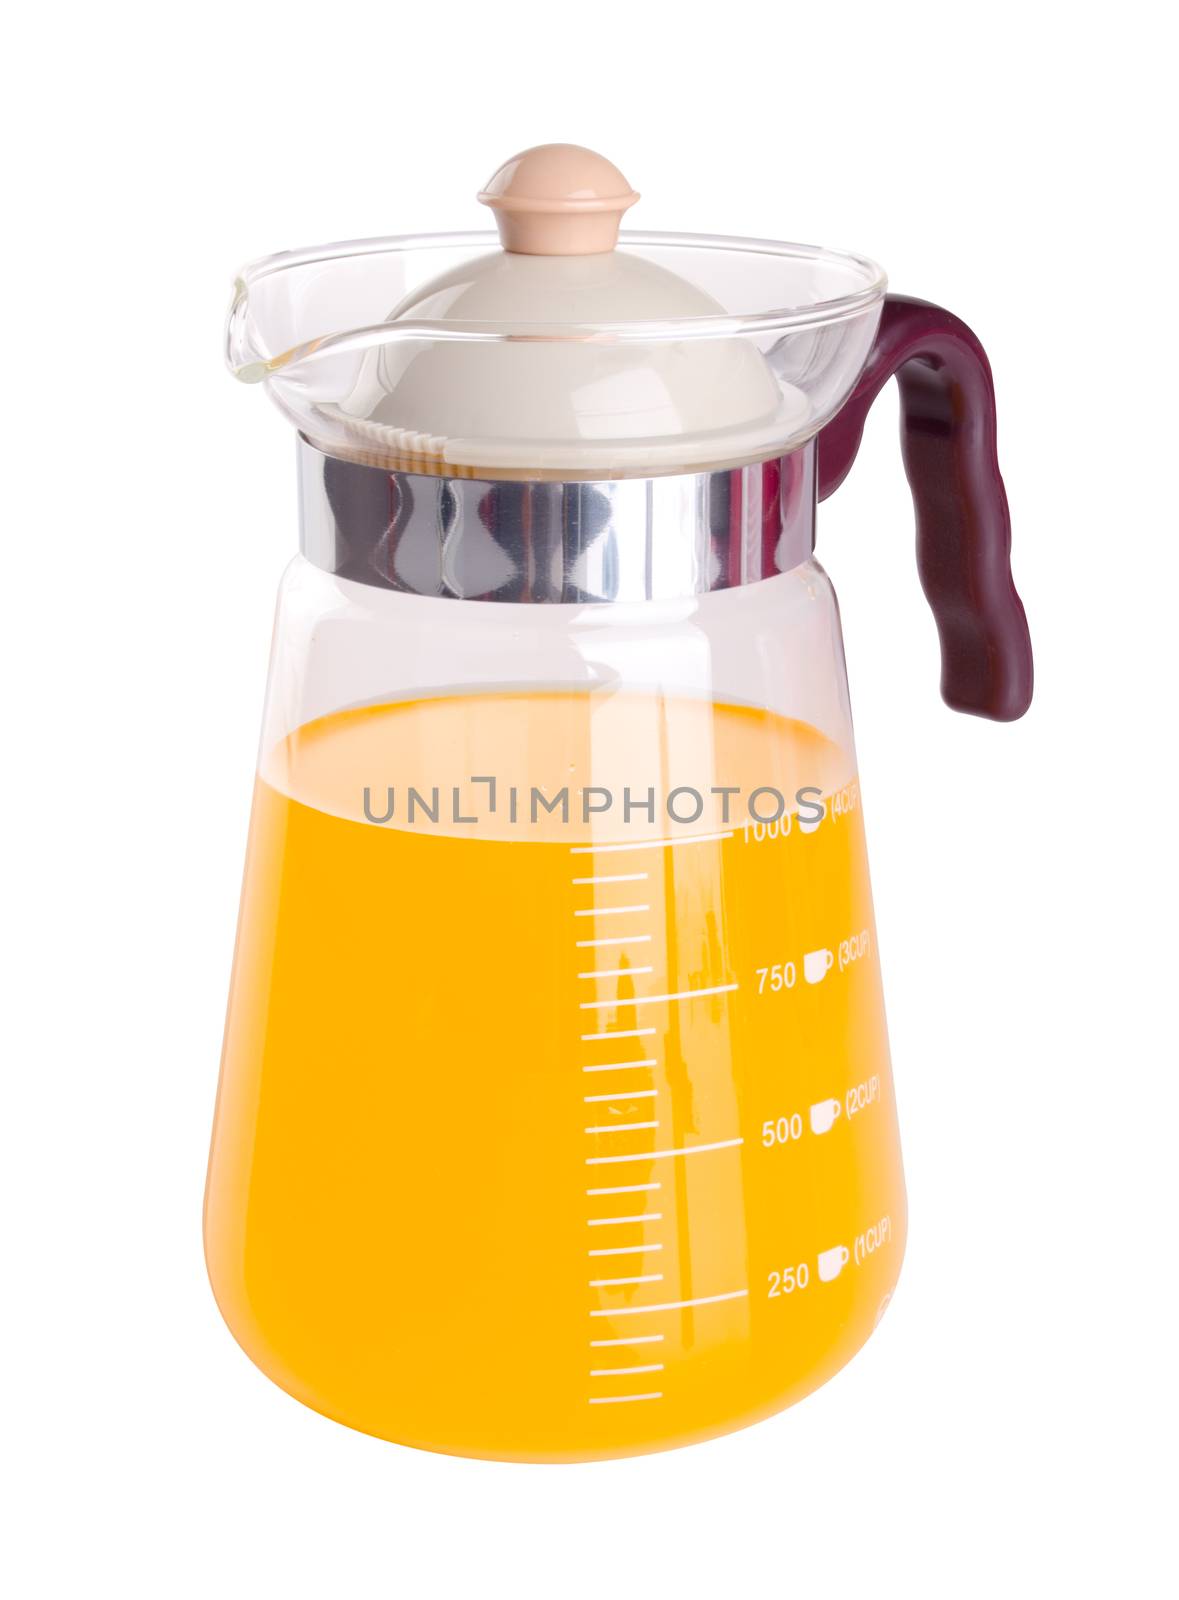 orange juice. orange juice on background. orange juice on a background.